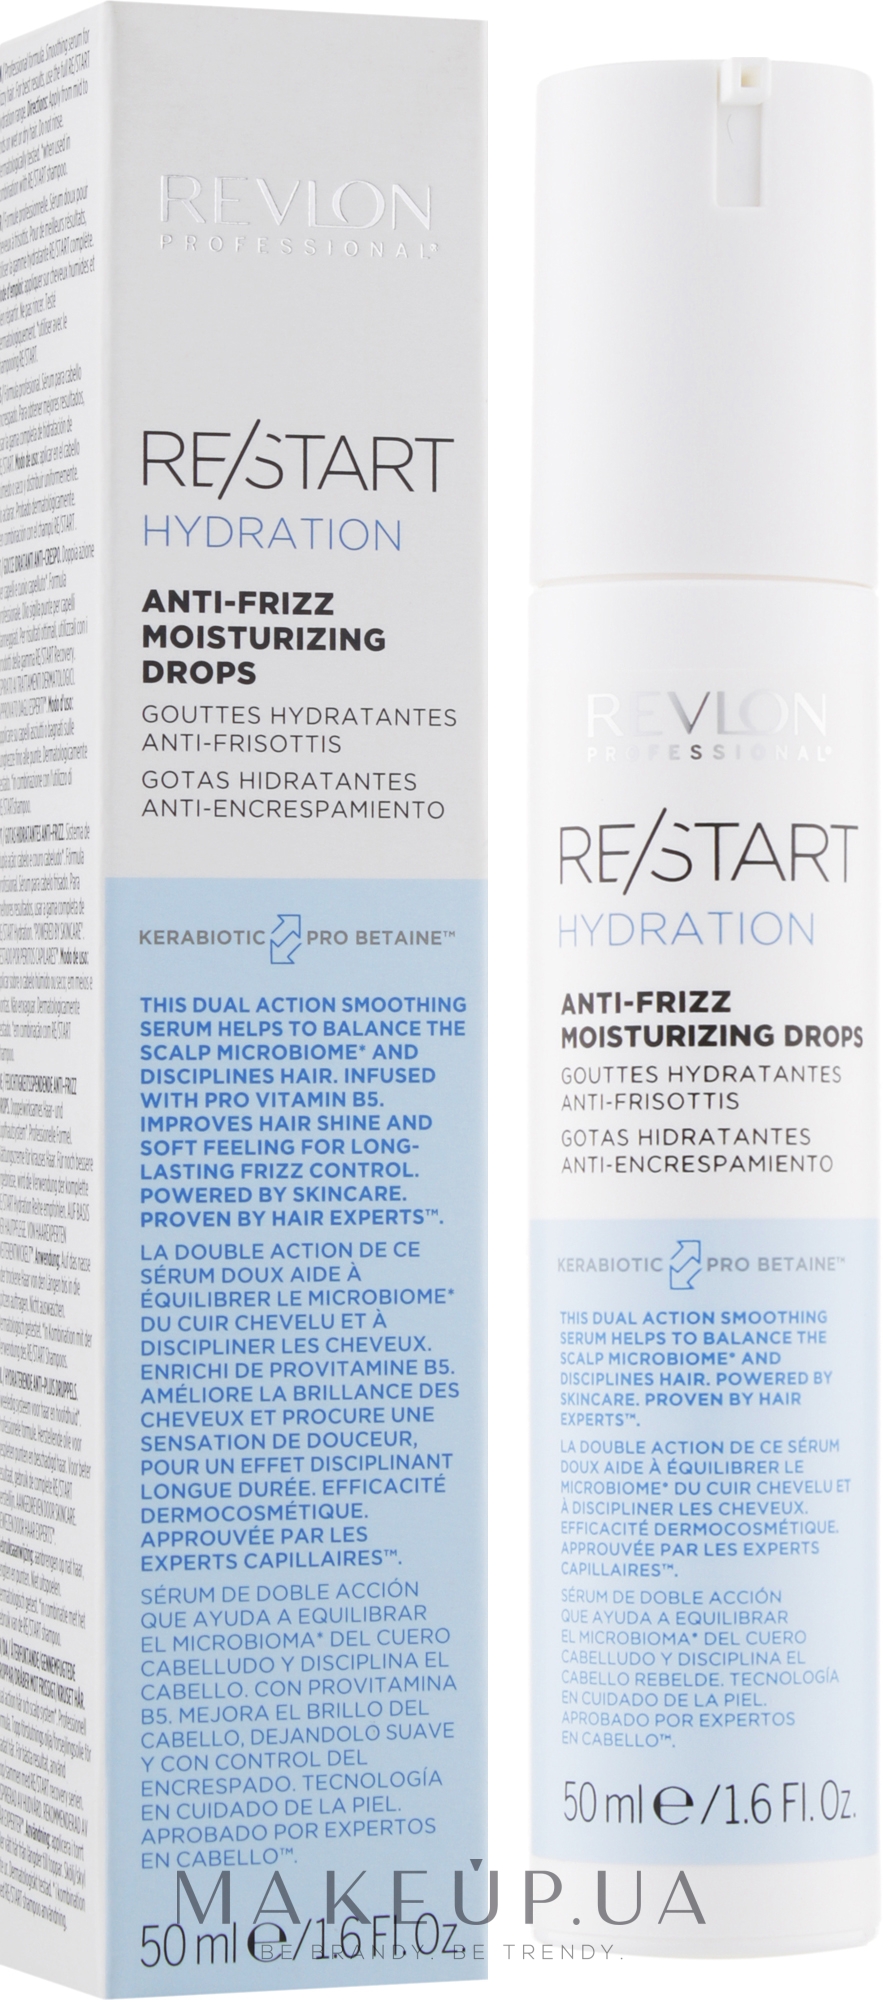 Сироватка для зволоження волосся - купити Professional Restart Revlon Hydration Moisturizing в Anti-frizz Drops: ціною найкращою Україні за